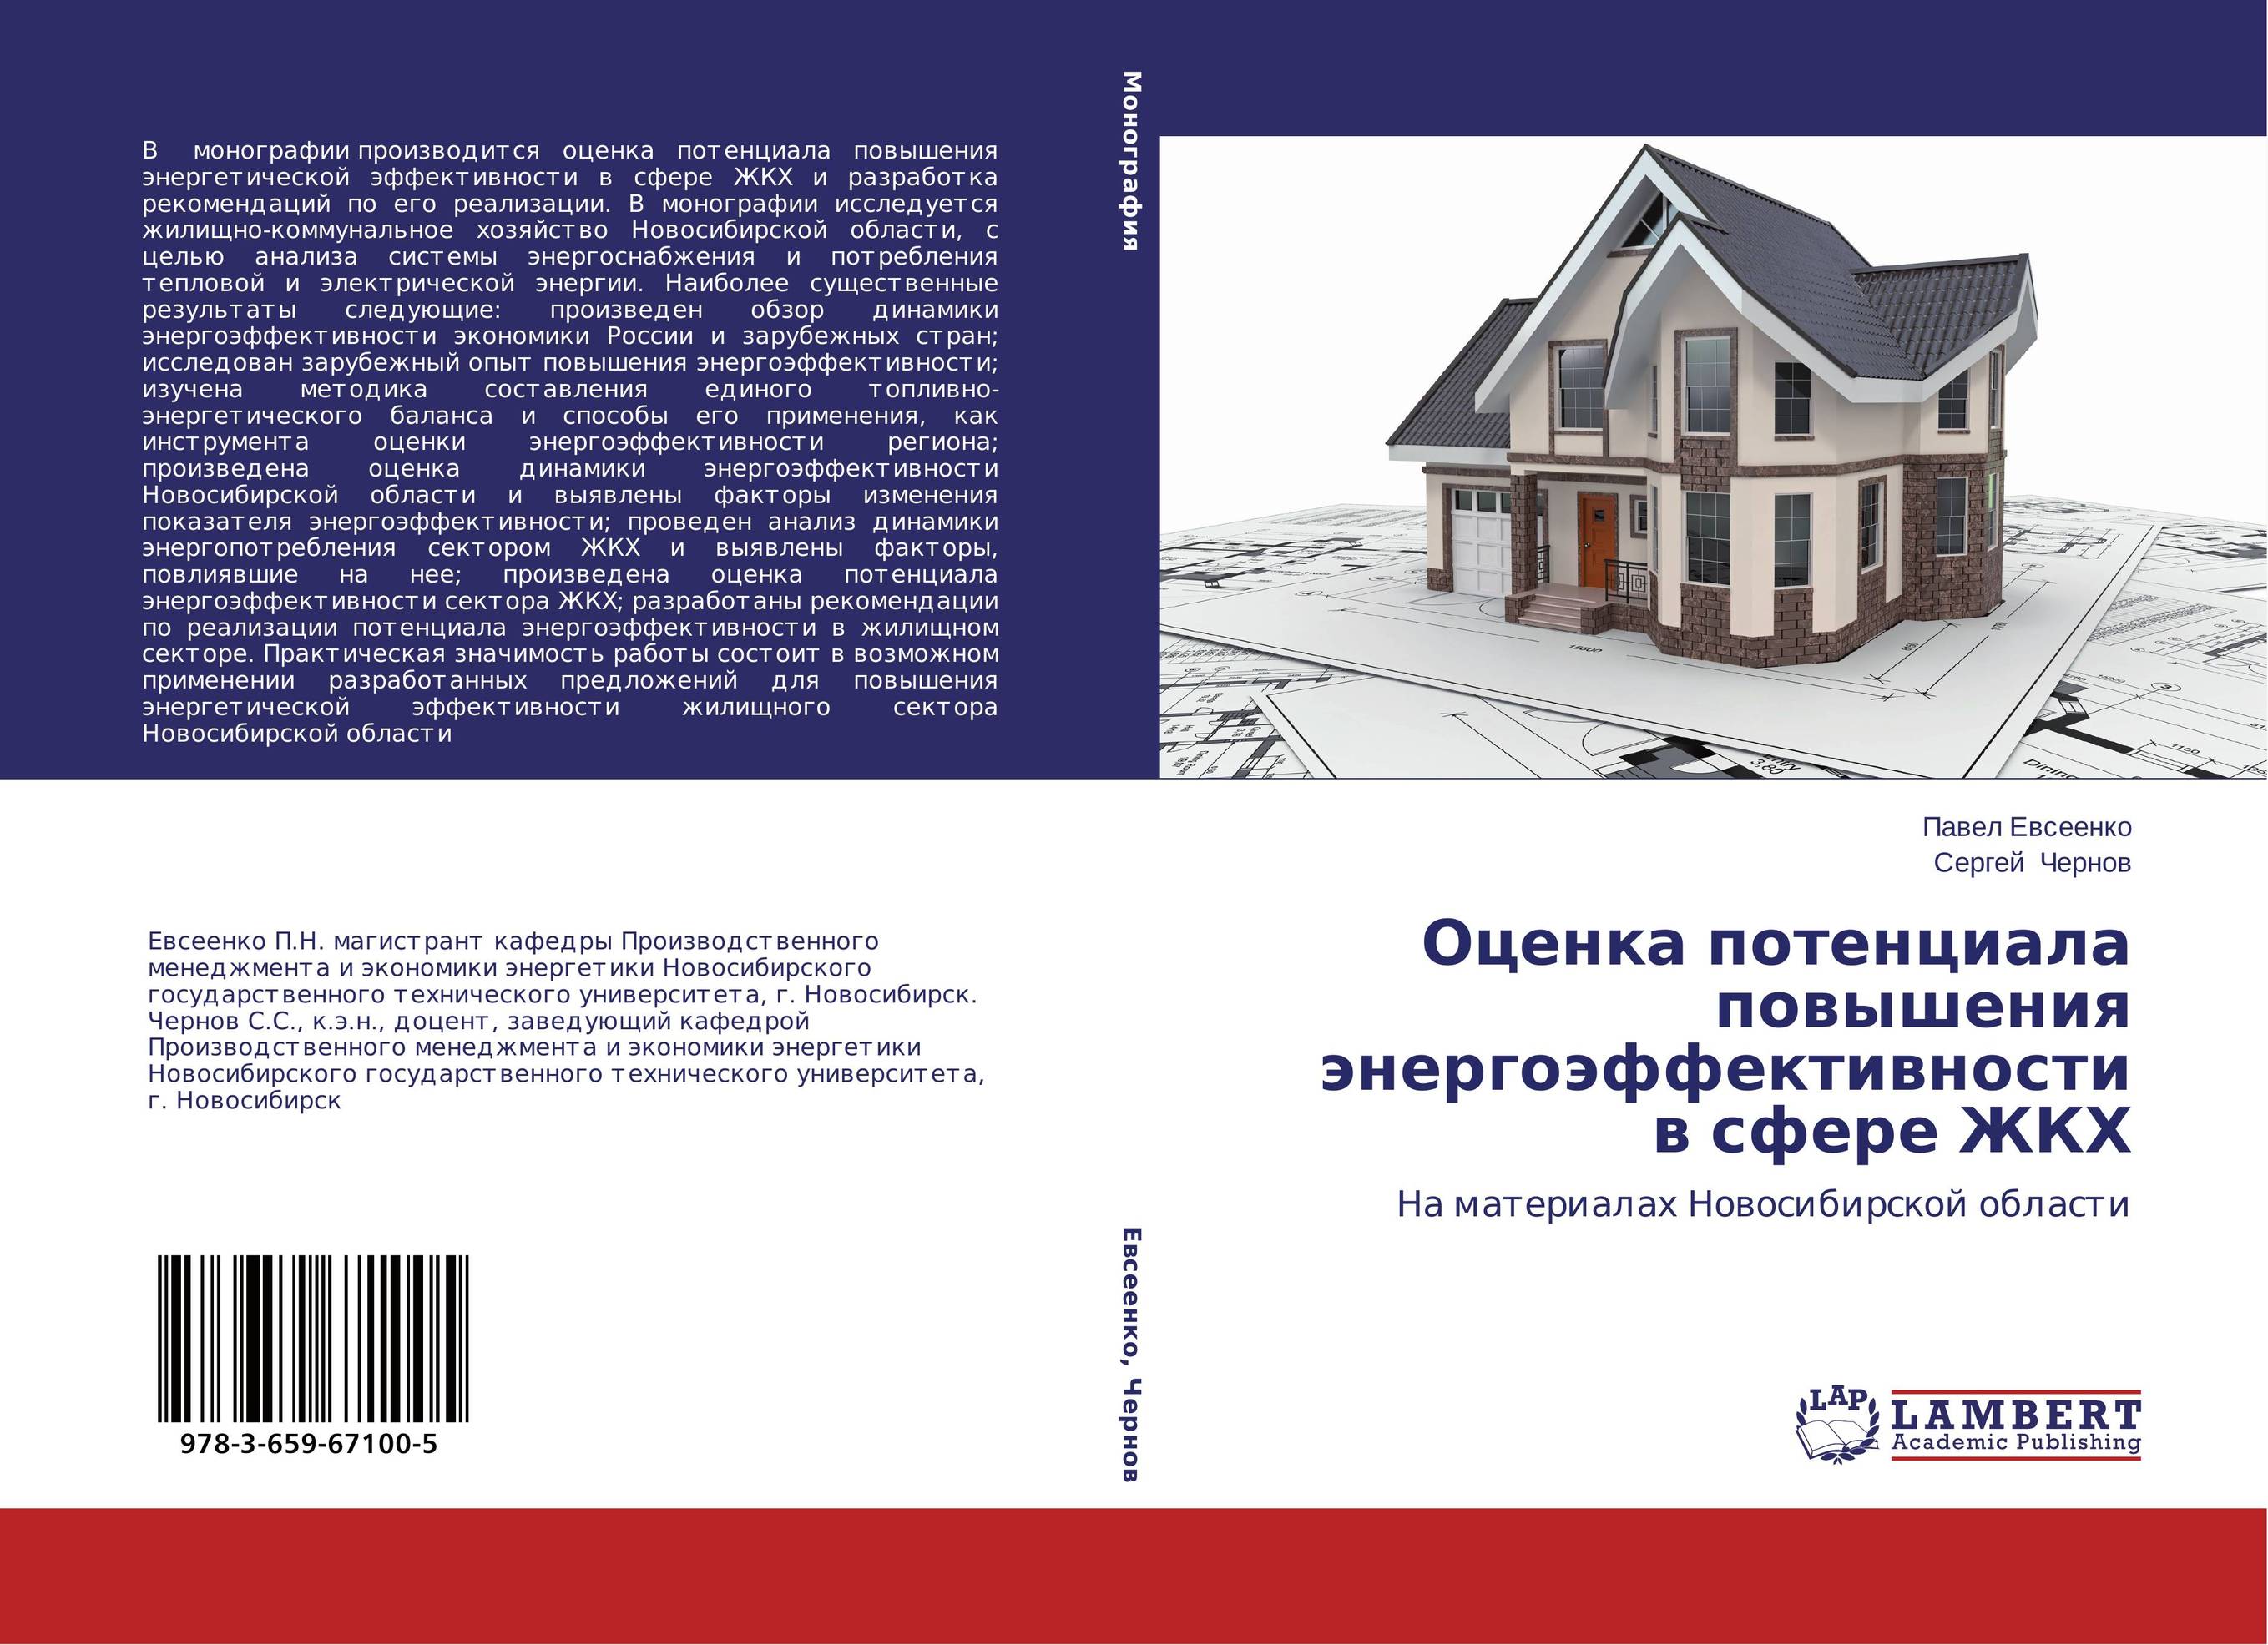 
        Оценка потенциала повышения энергоэффективности в сфере ЖКХ. На материалах Новосибирской области.
      